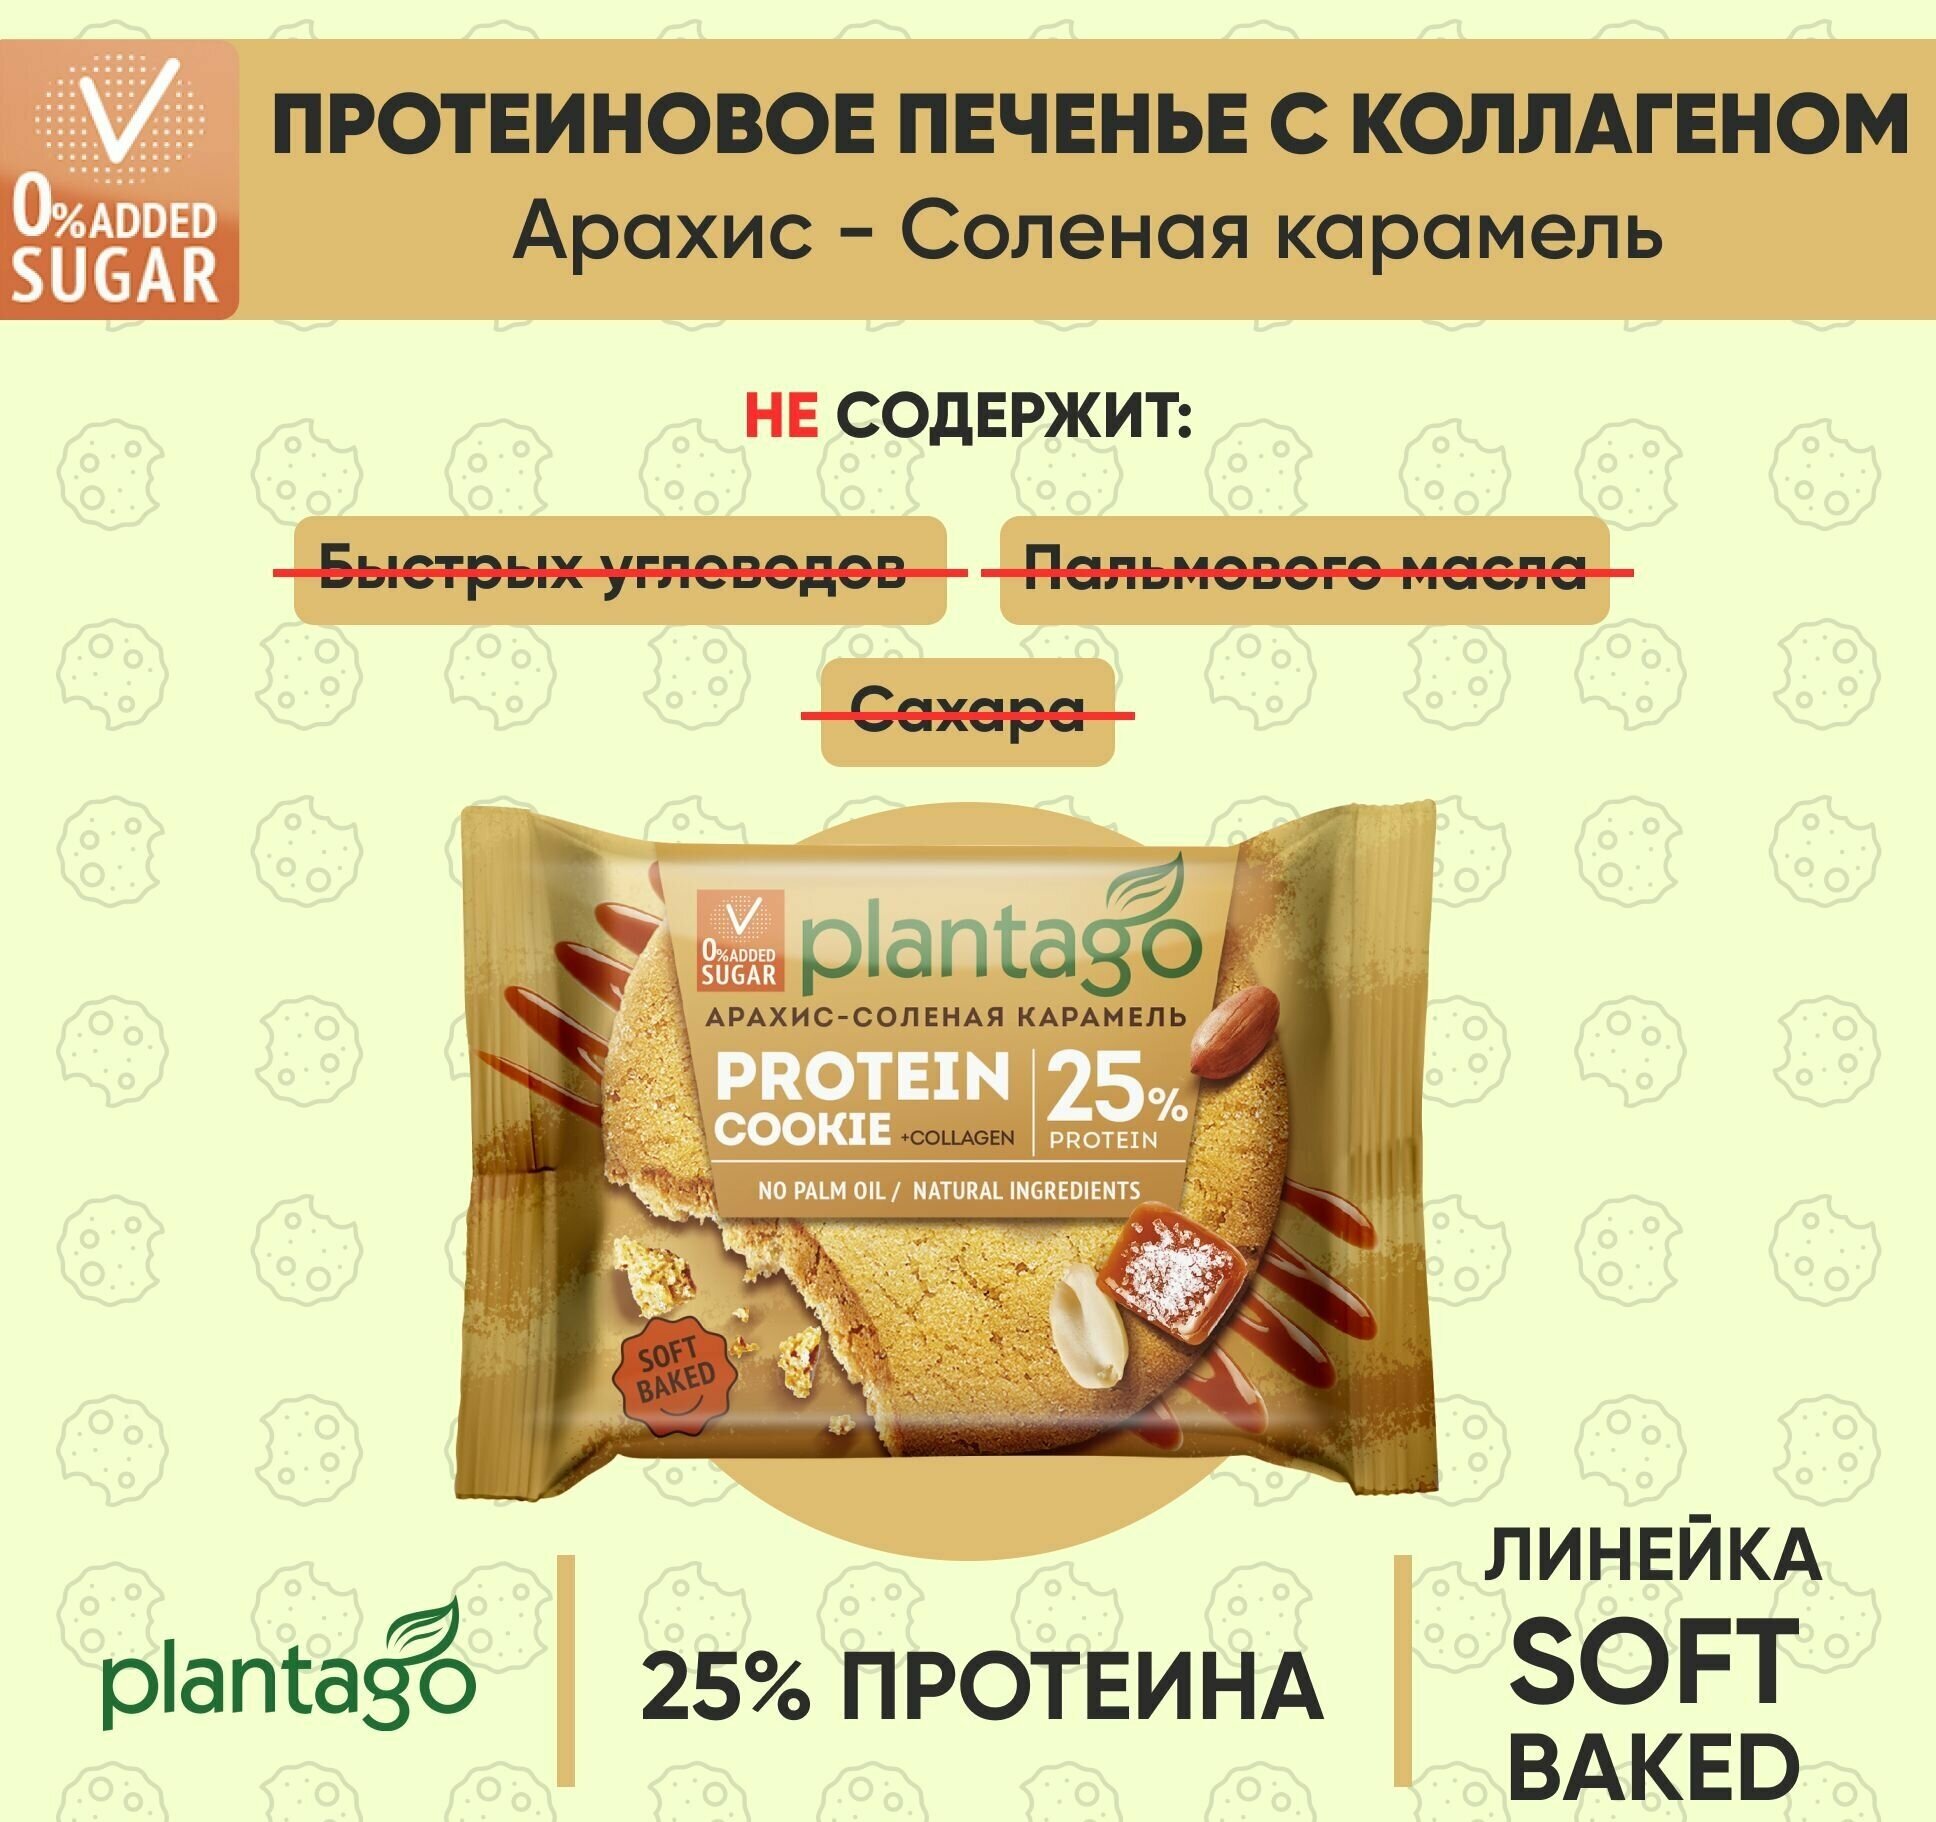 Plantago Печенье протеиновое с высоким содержанием белка Protein Cookie со вкусом Арахис-Соленая карамель 25%, 9 шт. по 40 гр/ с коллагеном / Плантаго